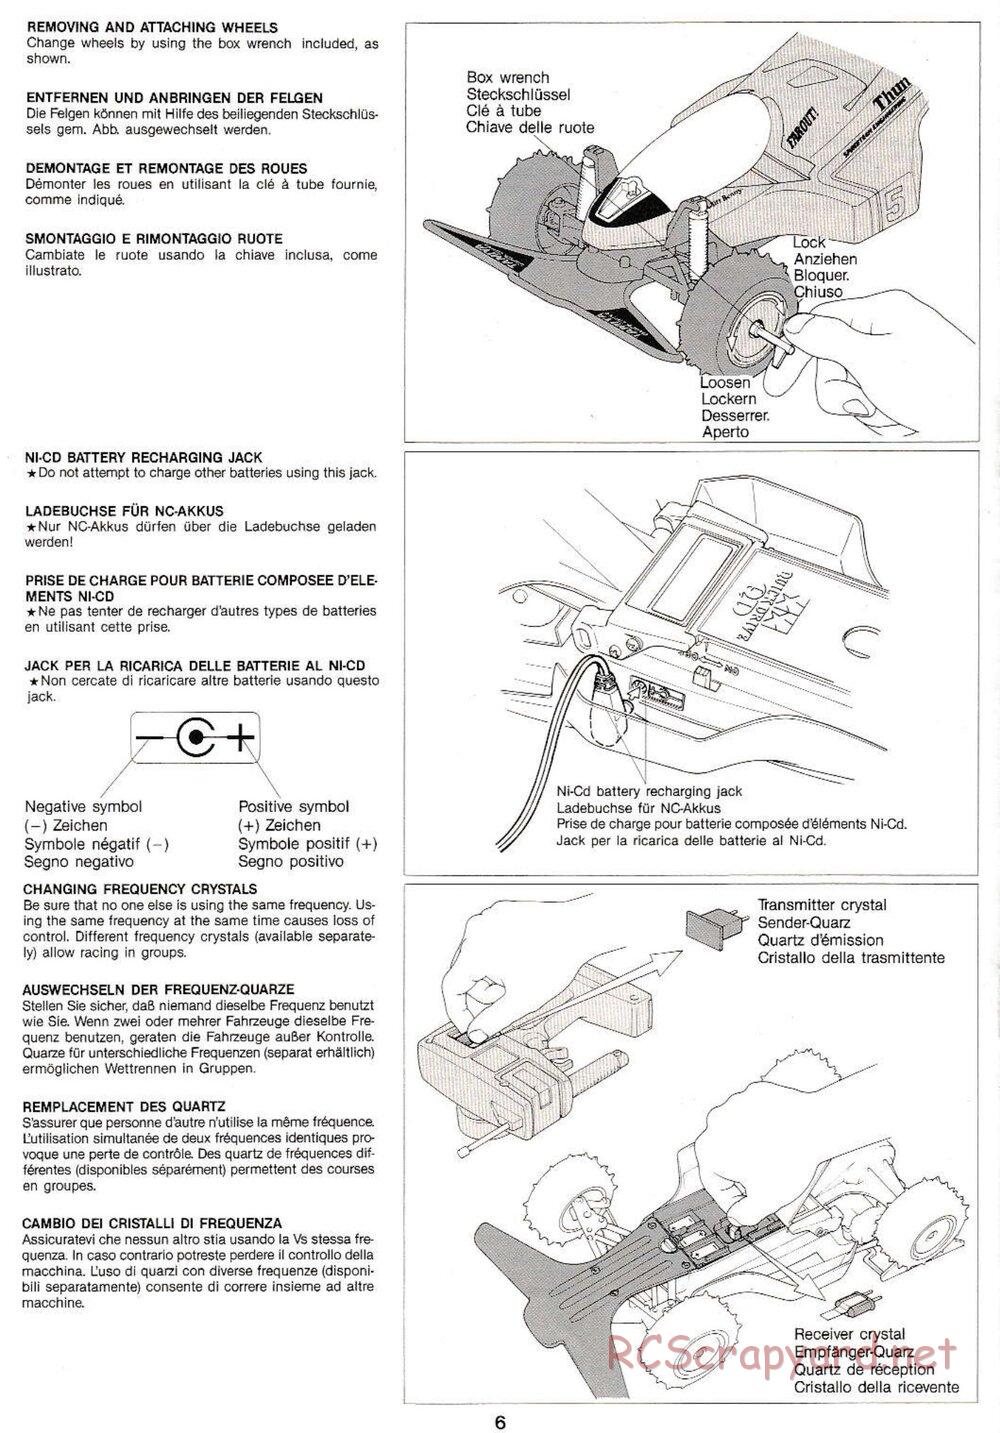 Tamiya - Thunder Shot QD Chassis - Manual - Page 6